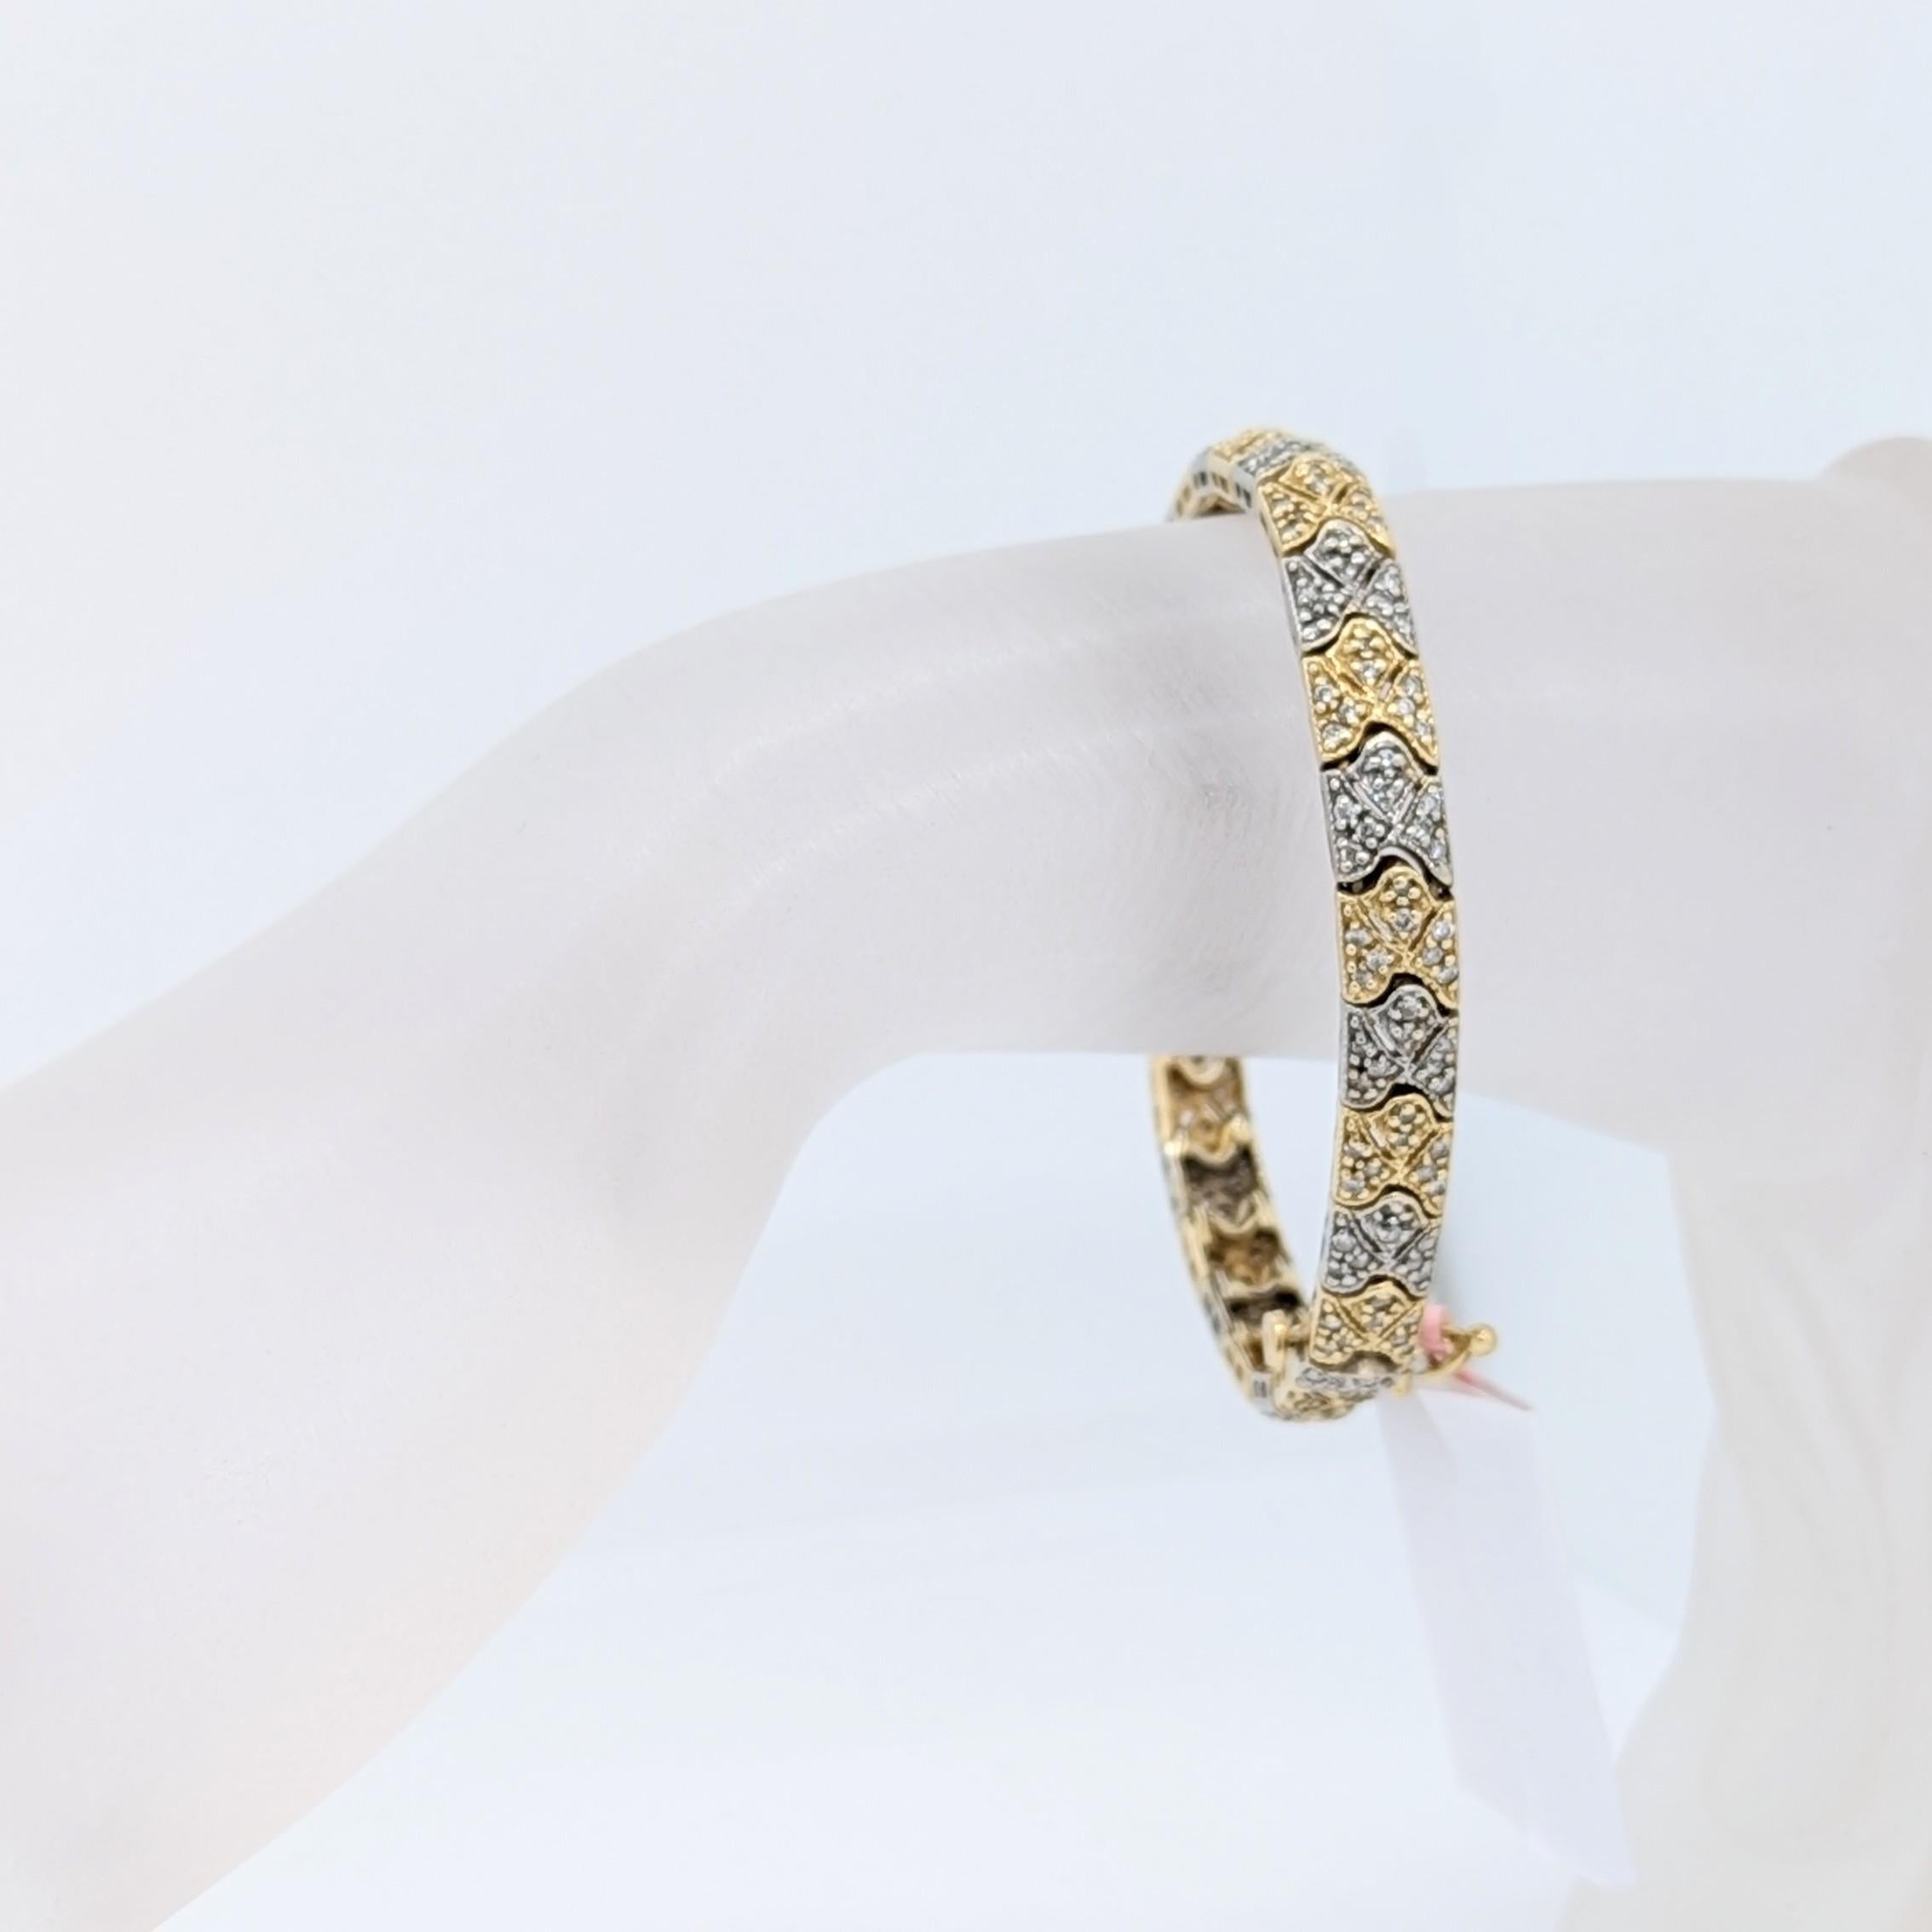 Wunderschöne, weiße und helle runde Diamanten von guter Qualität in diesem elegant gestalteten Armband.  Handgefertigt aus 14 Karat Gelb- und Weißgold.  Die Länge beträgt 7